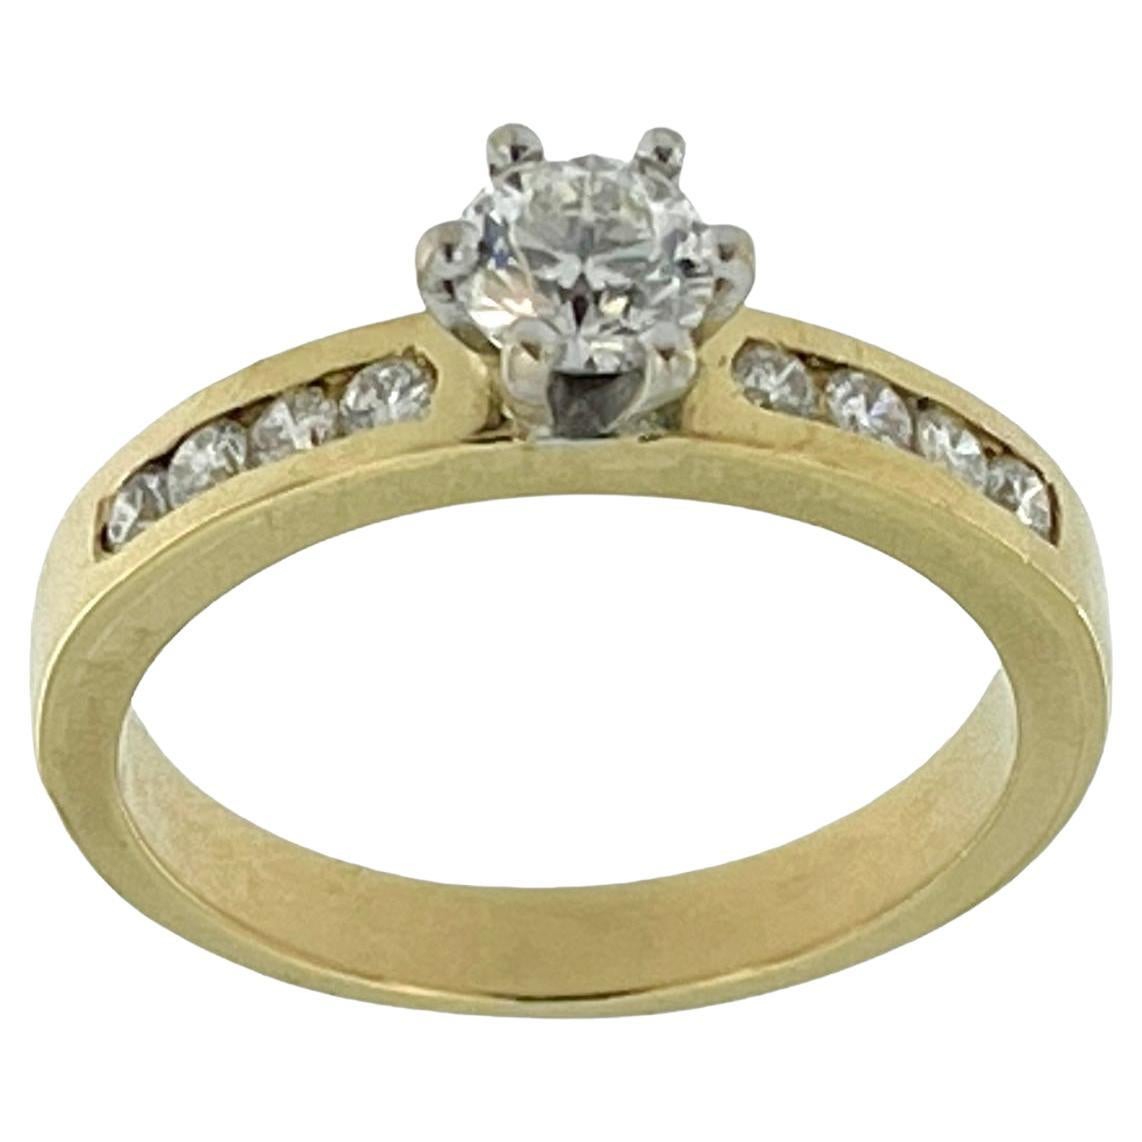 HRD-zertifizierter Verlobungsring aus Gelb- und Weißgold mit Diamanten